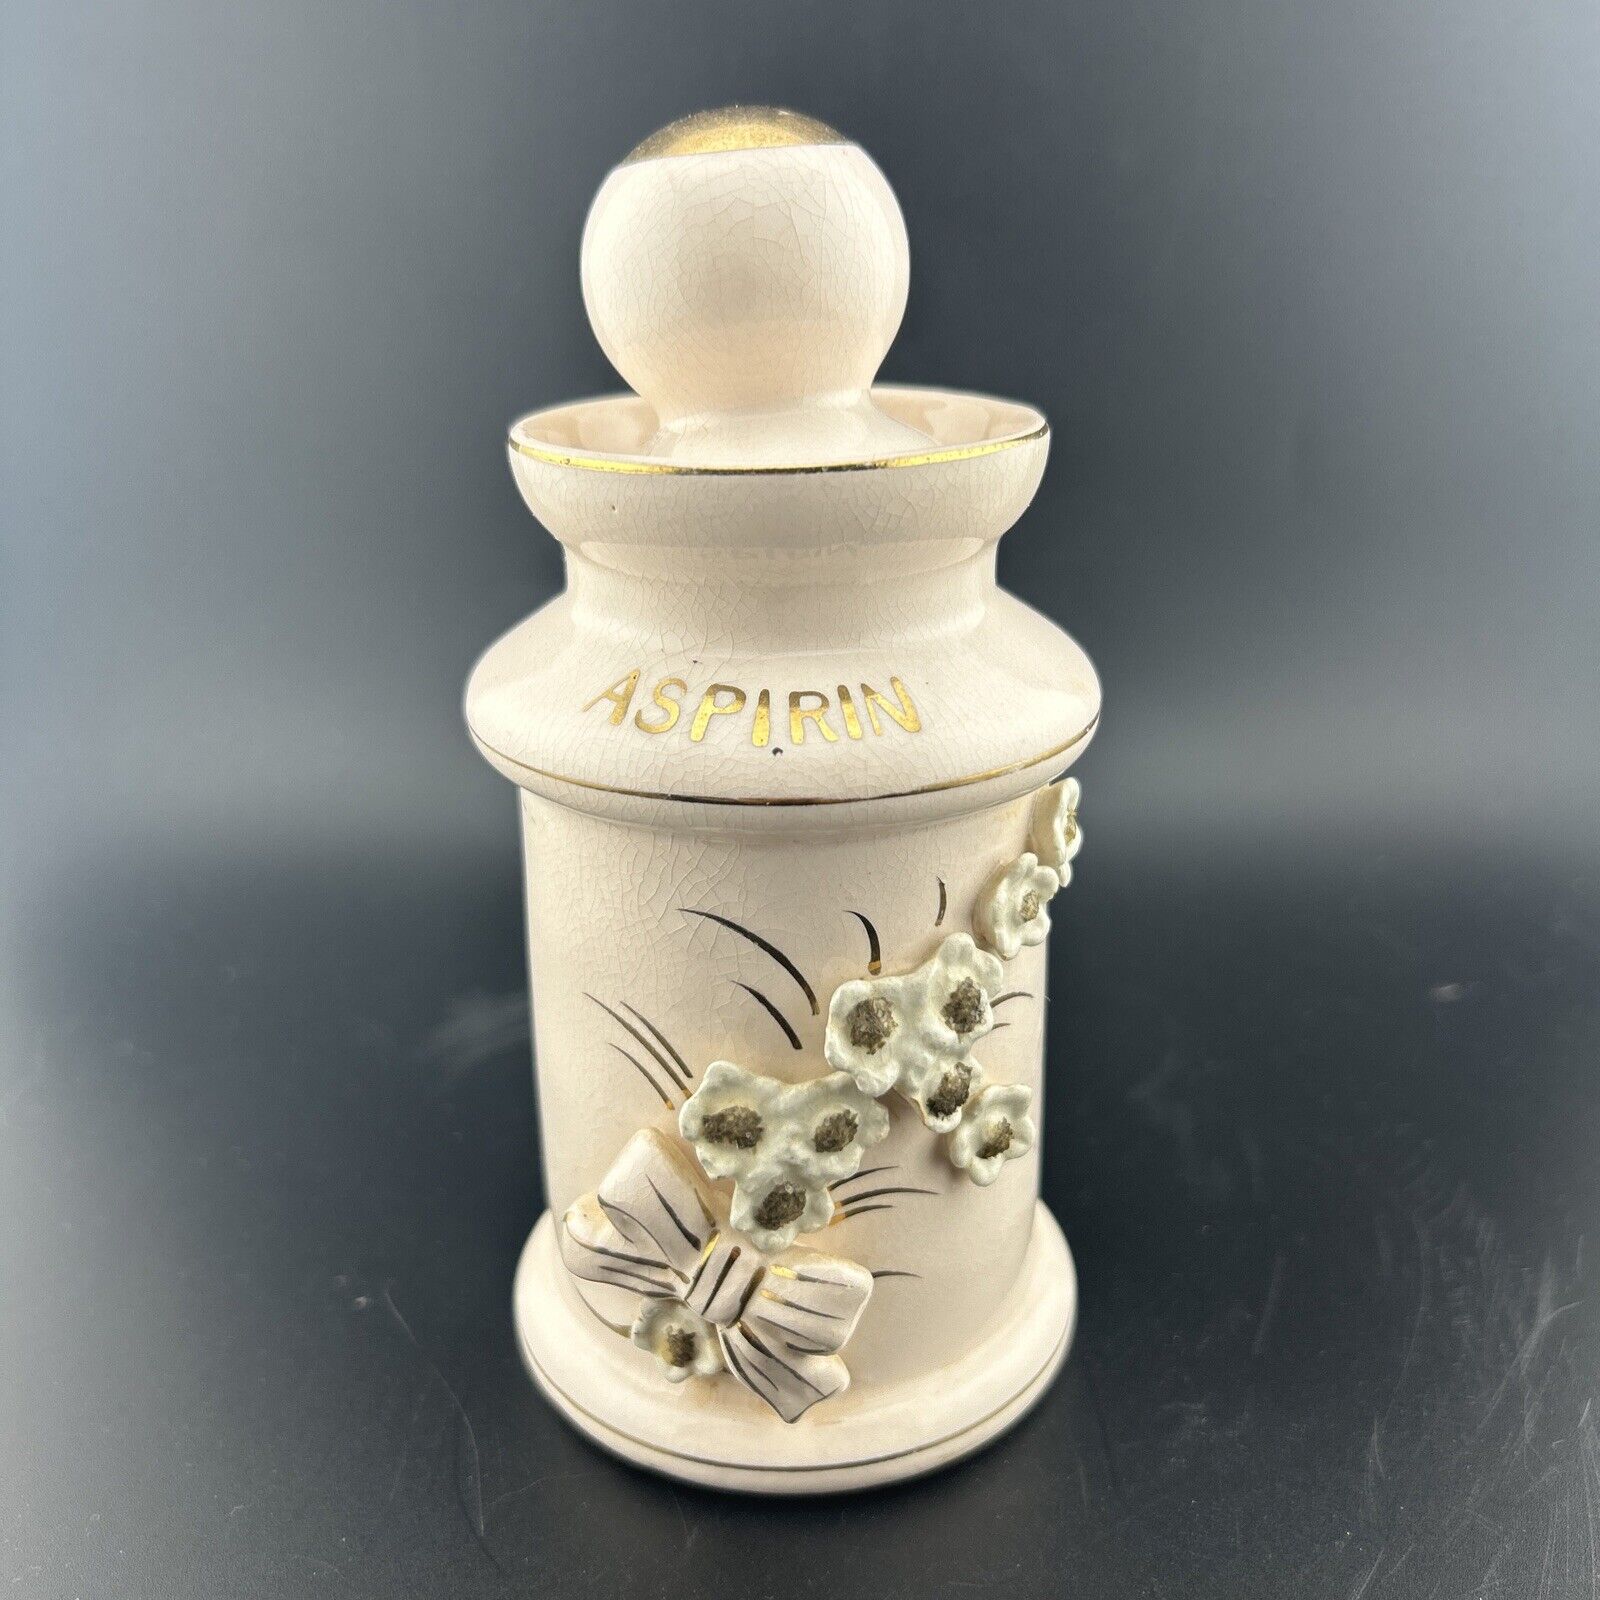 Thames Porcelain Apothecary Jar 1930’s Aspirin Pink & Gold